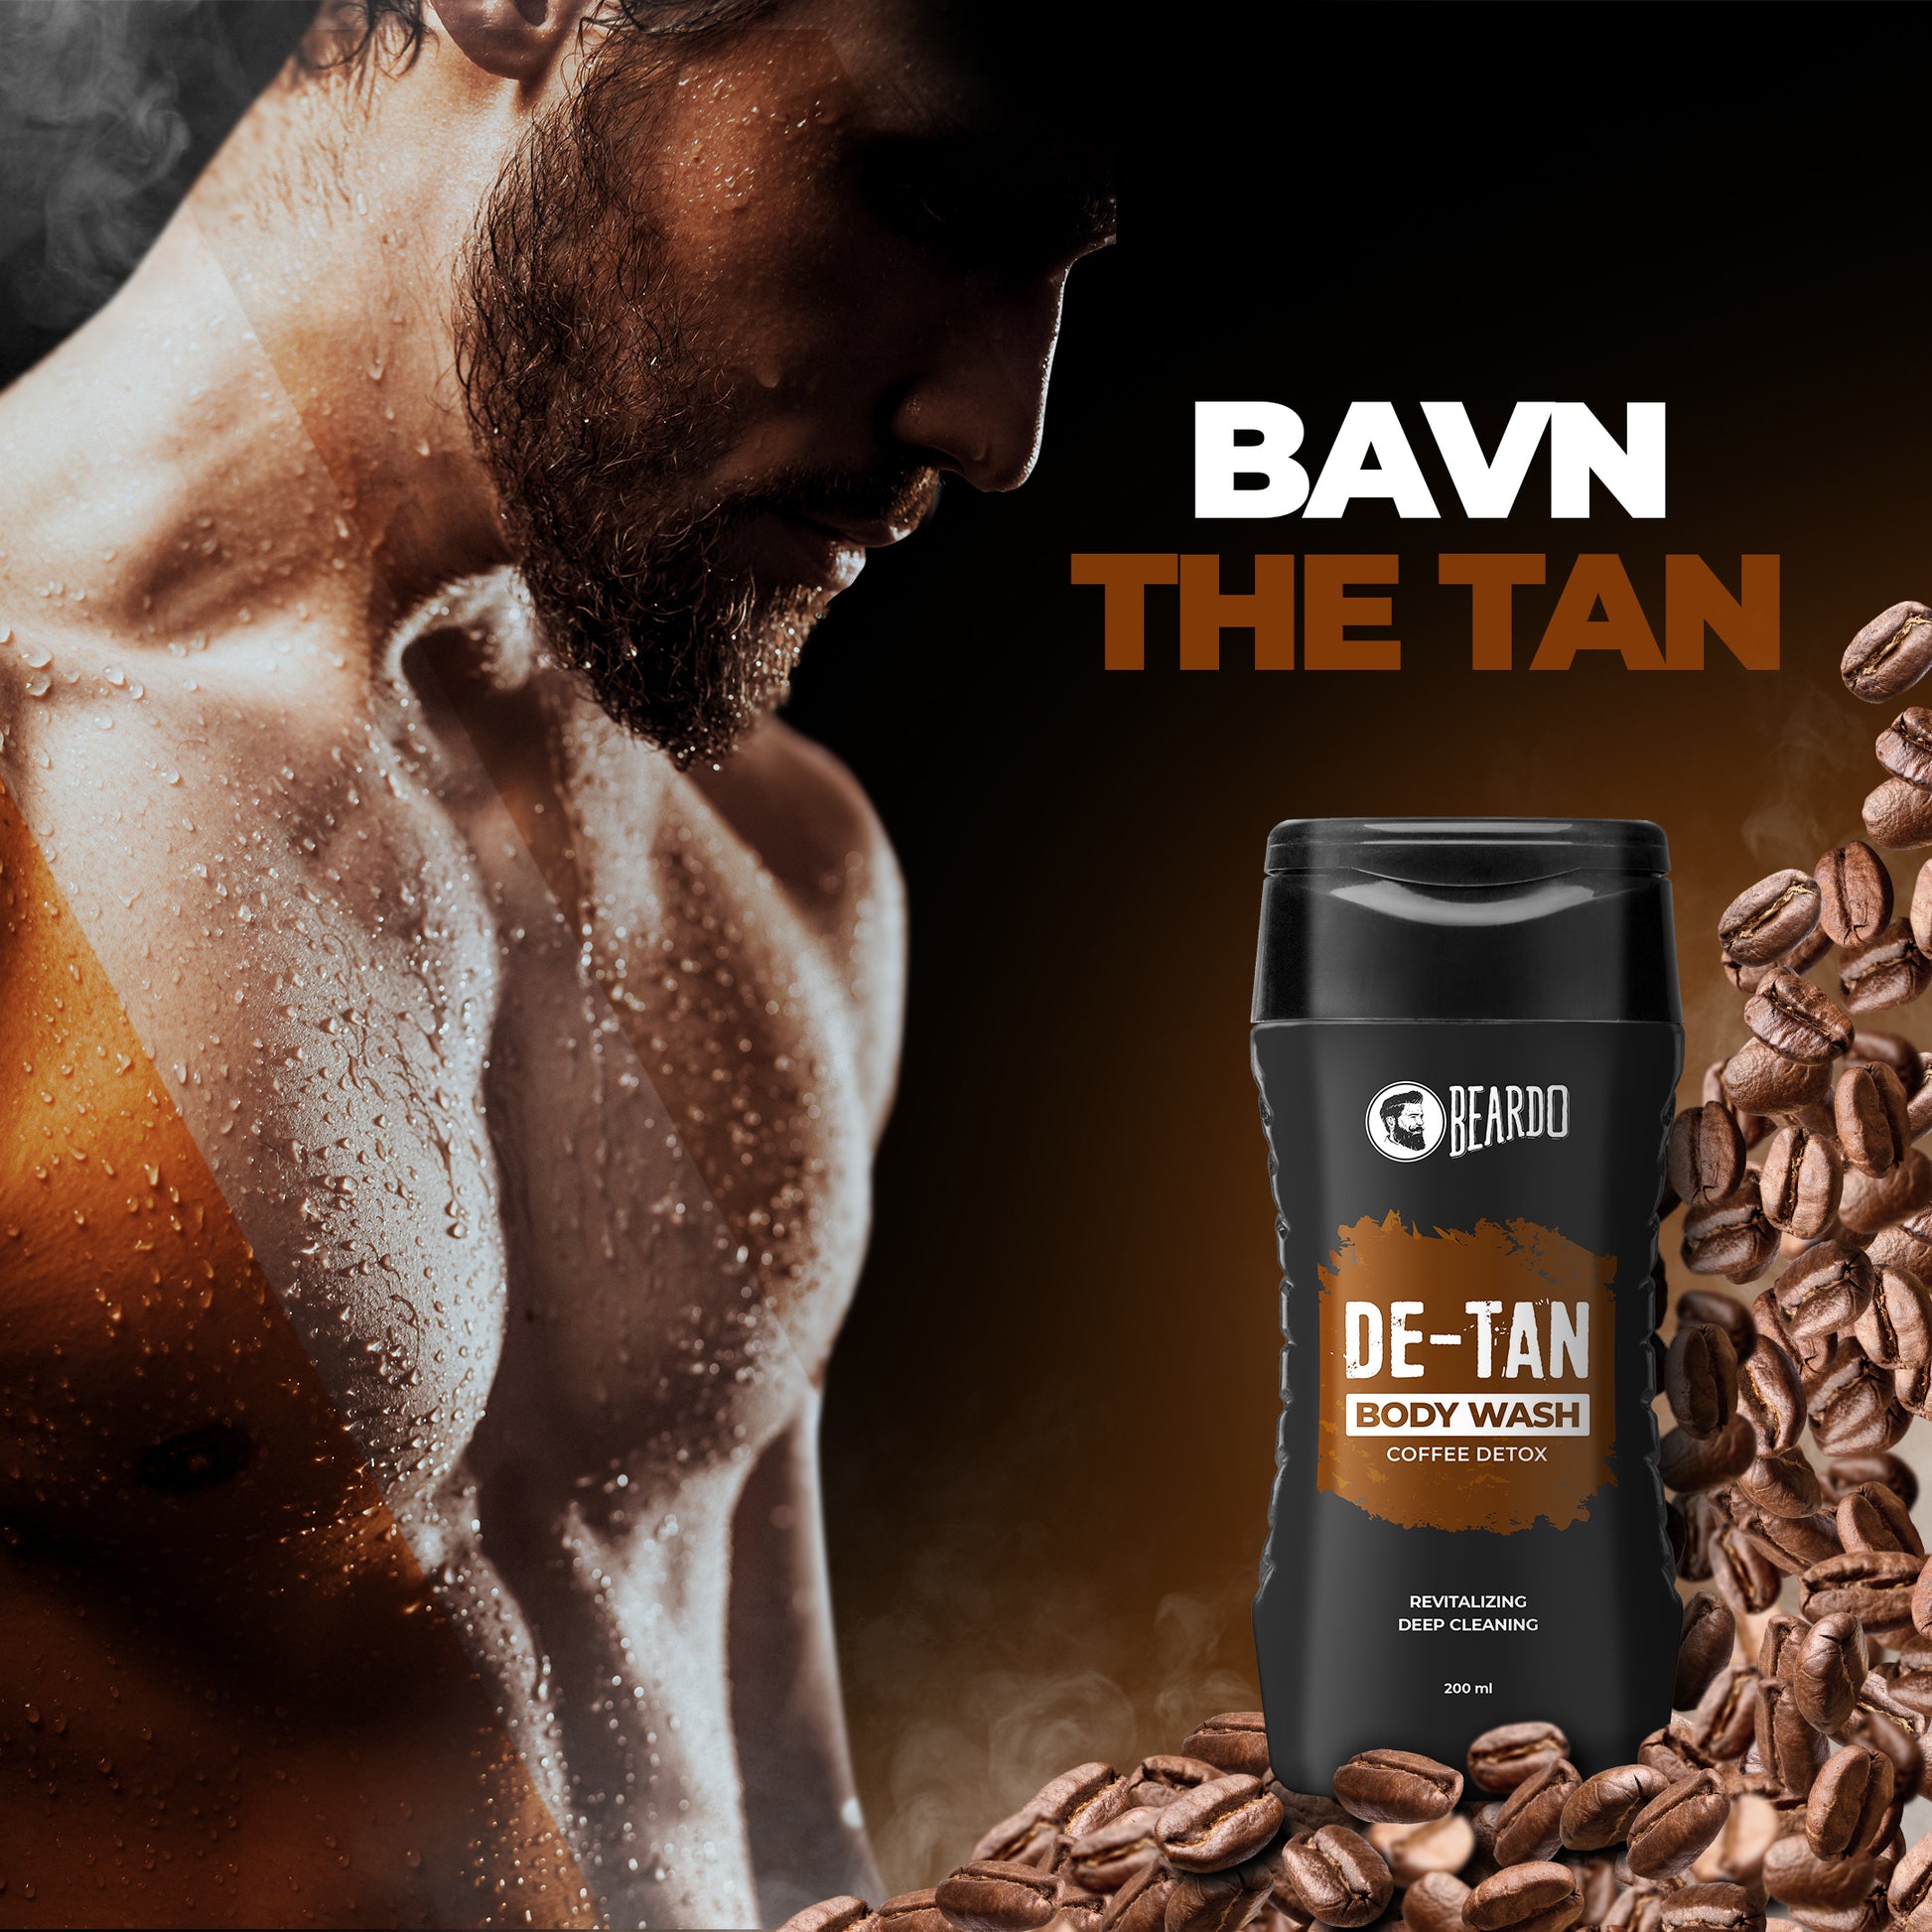 Ban the tan